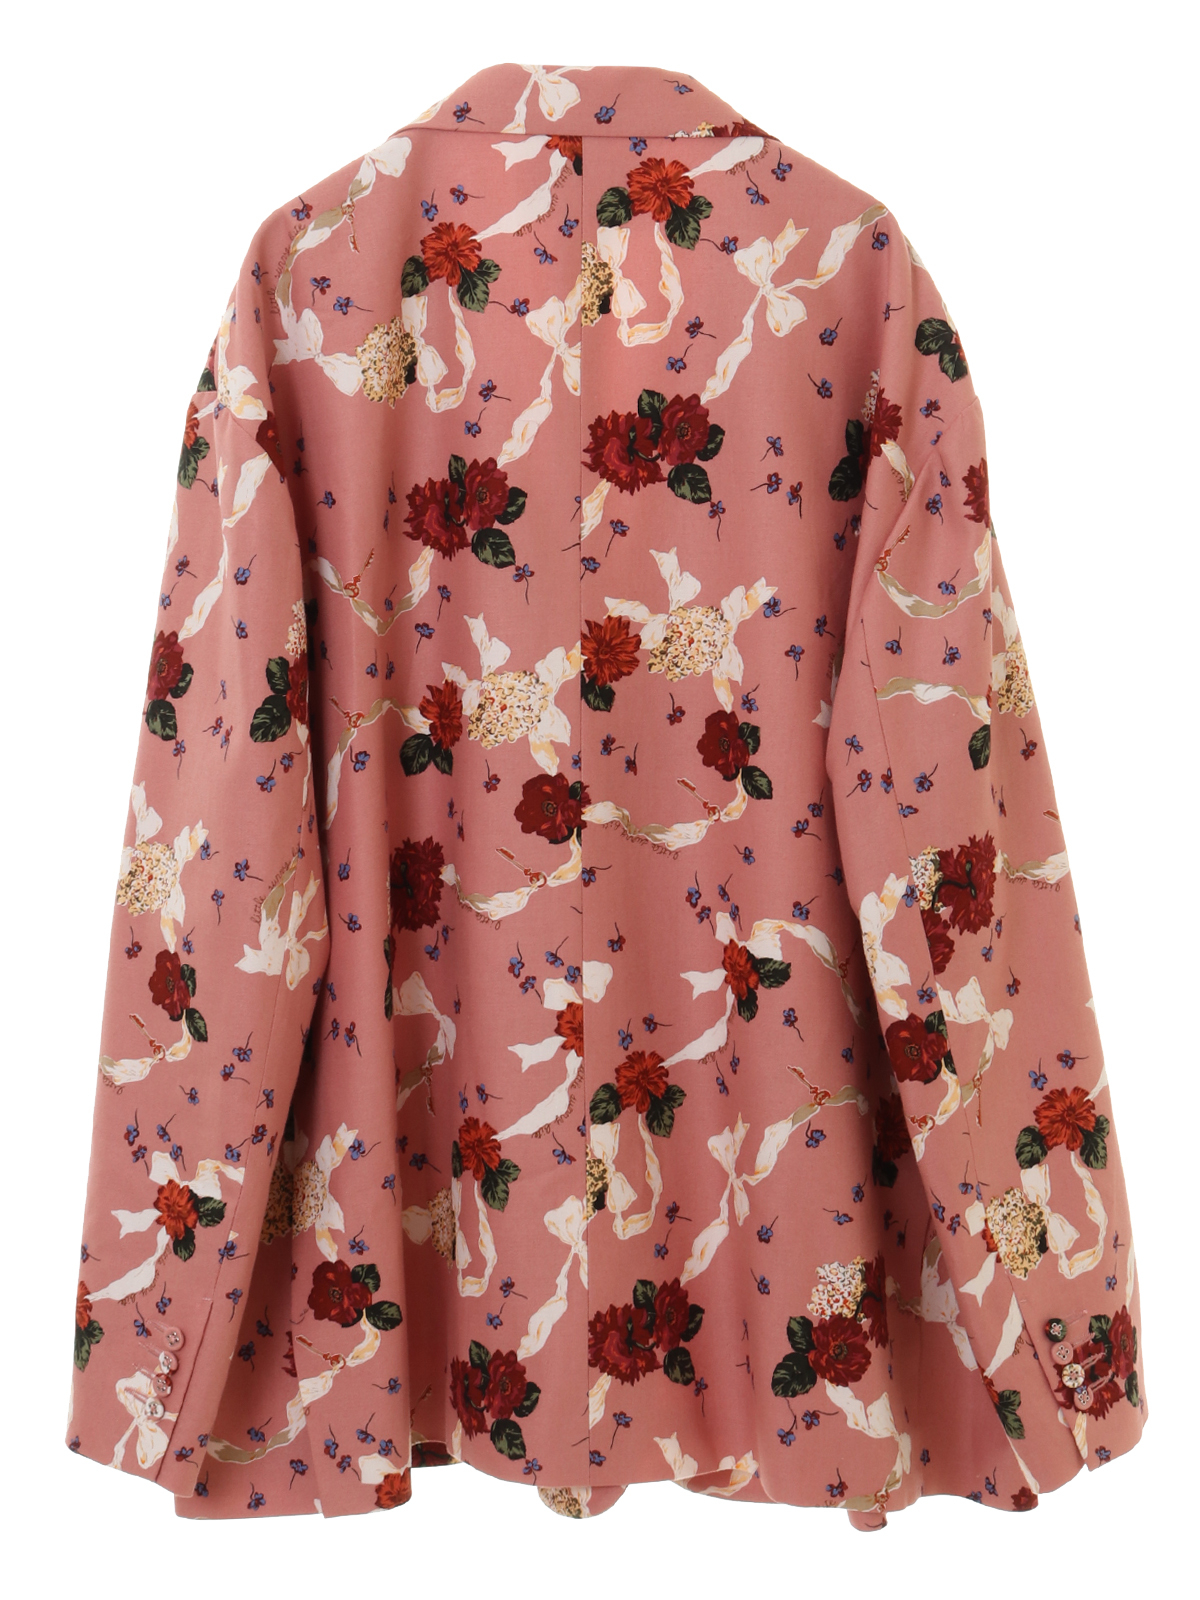 【OUTLET】Flower print big jacket